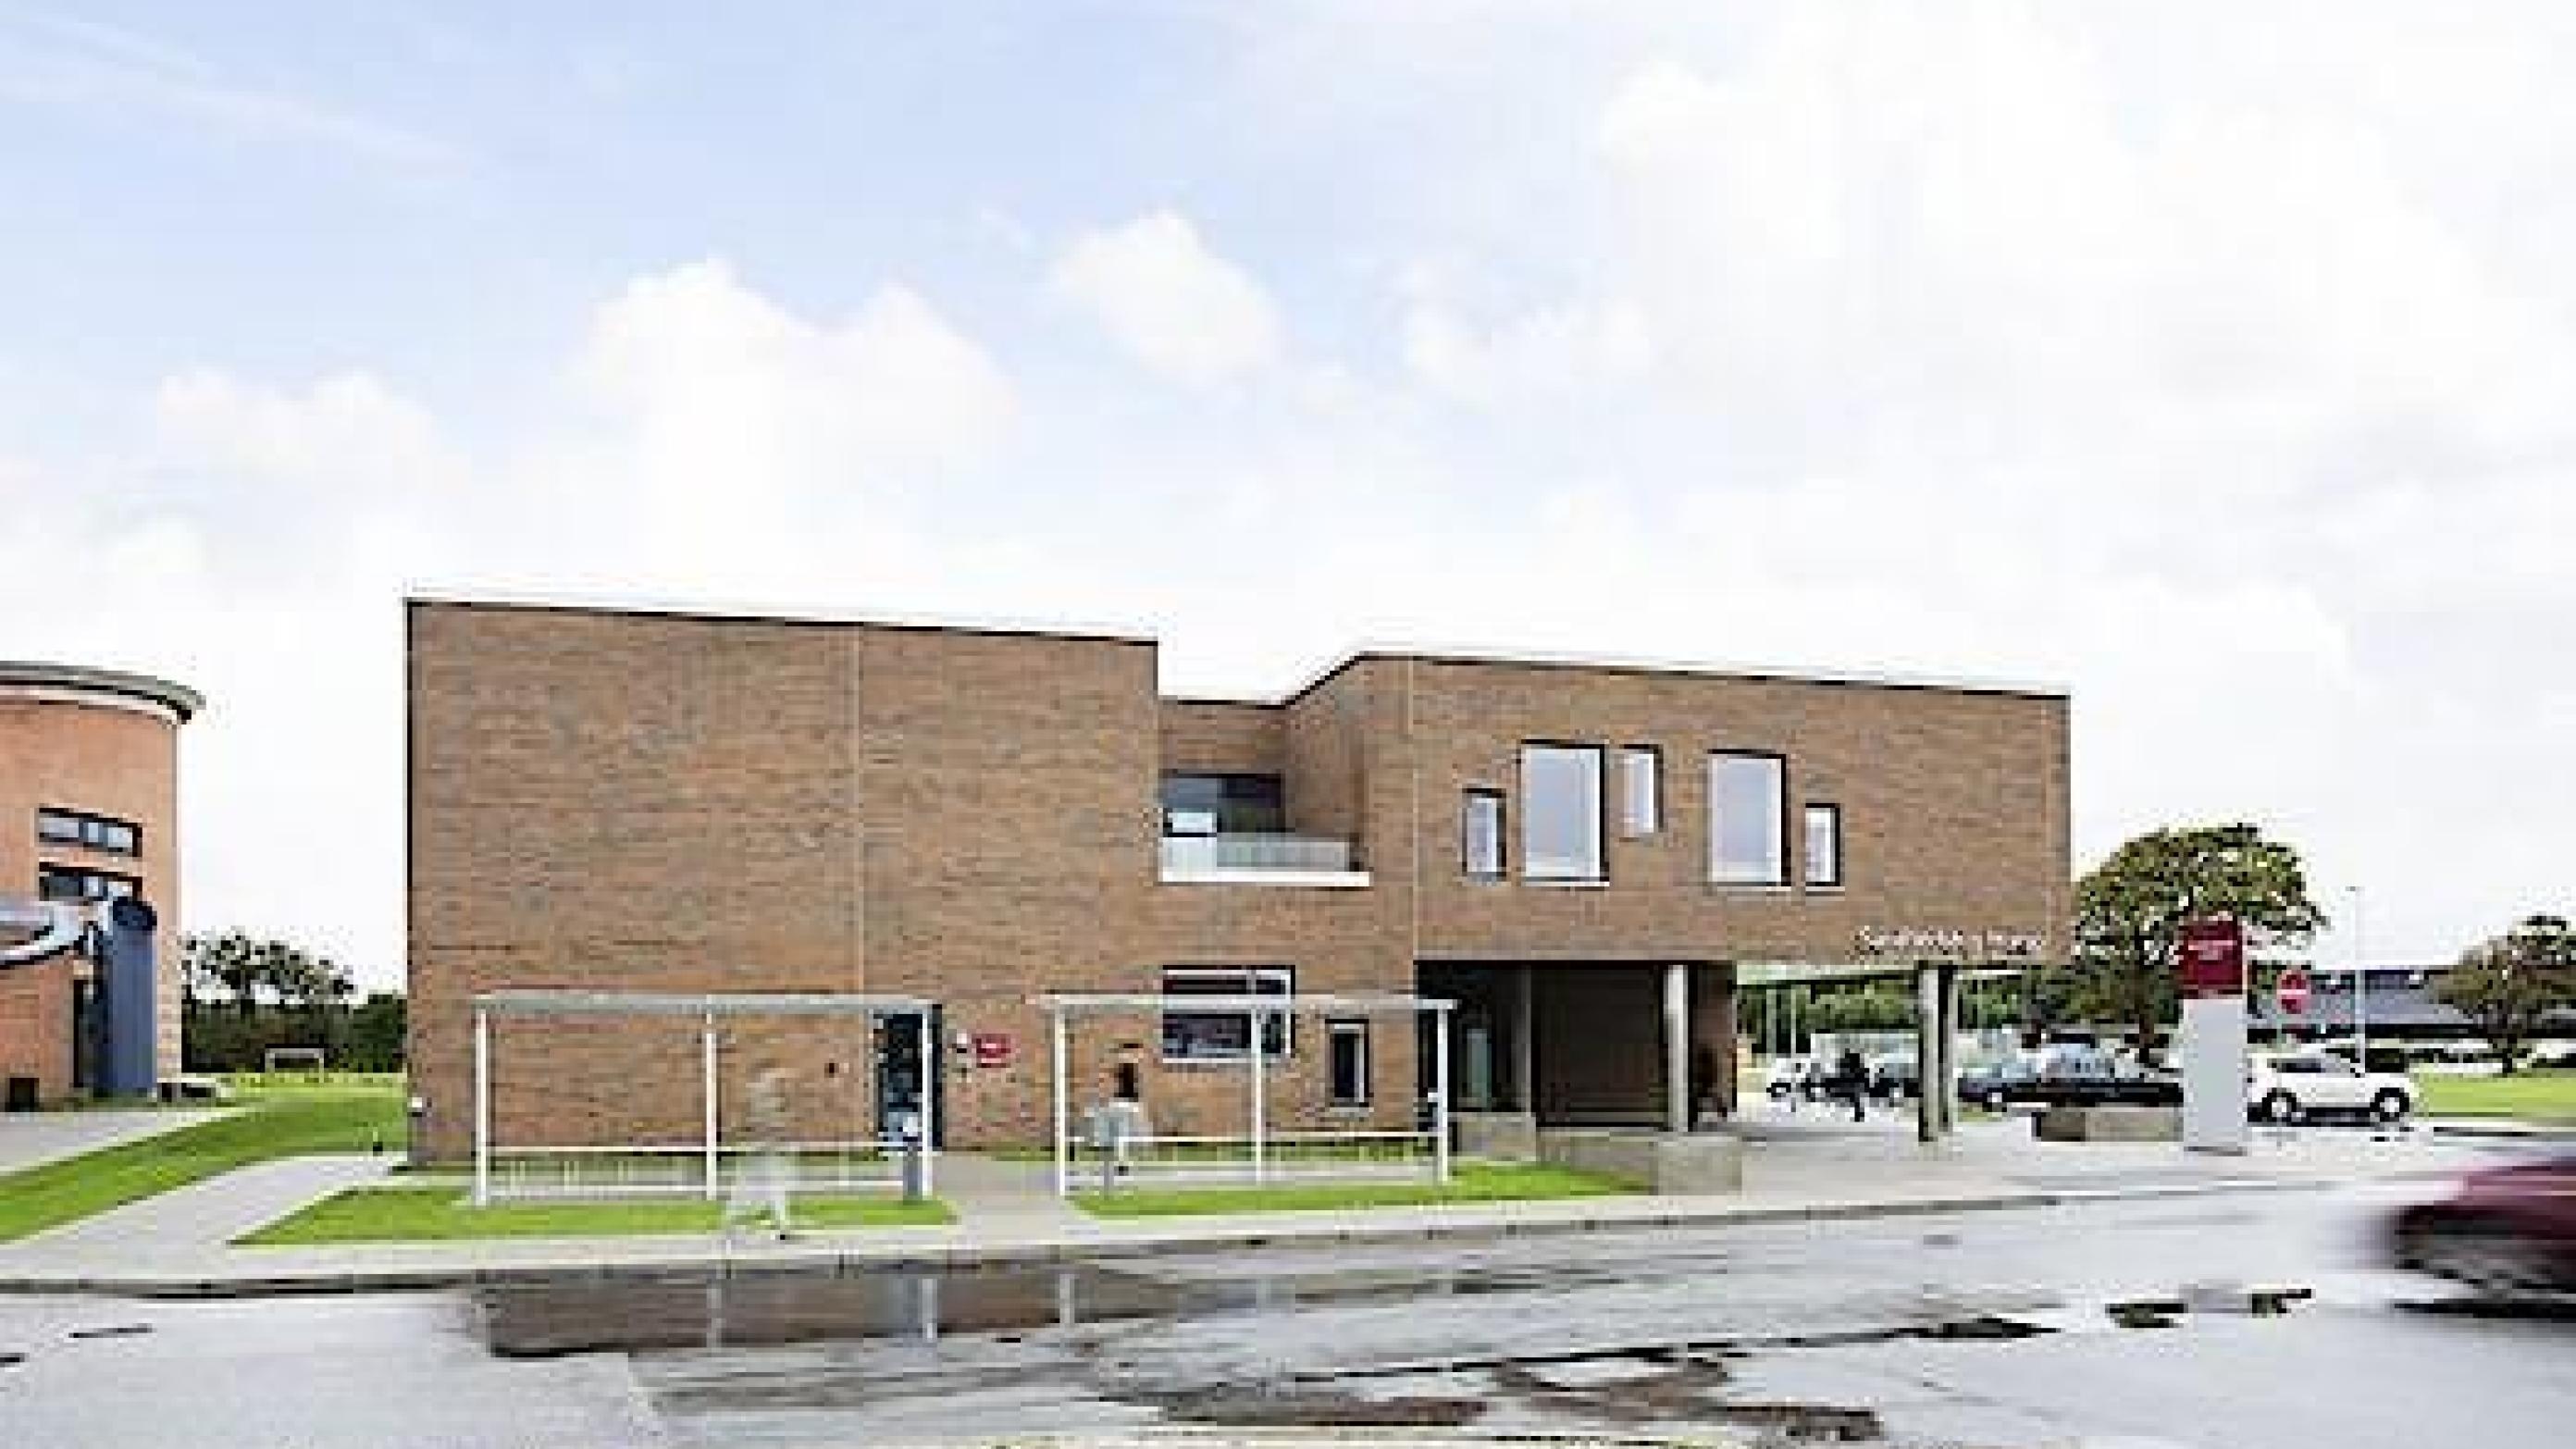 Regionsklinikken i Hurup, som fortsat skal drives af Falck. Foto: Region Nordjylland.